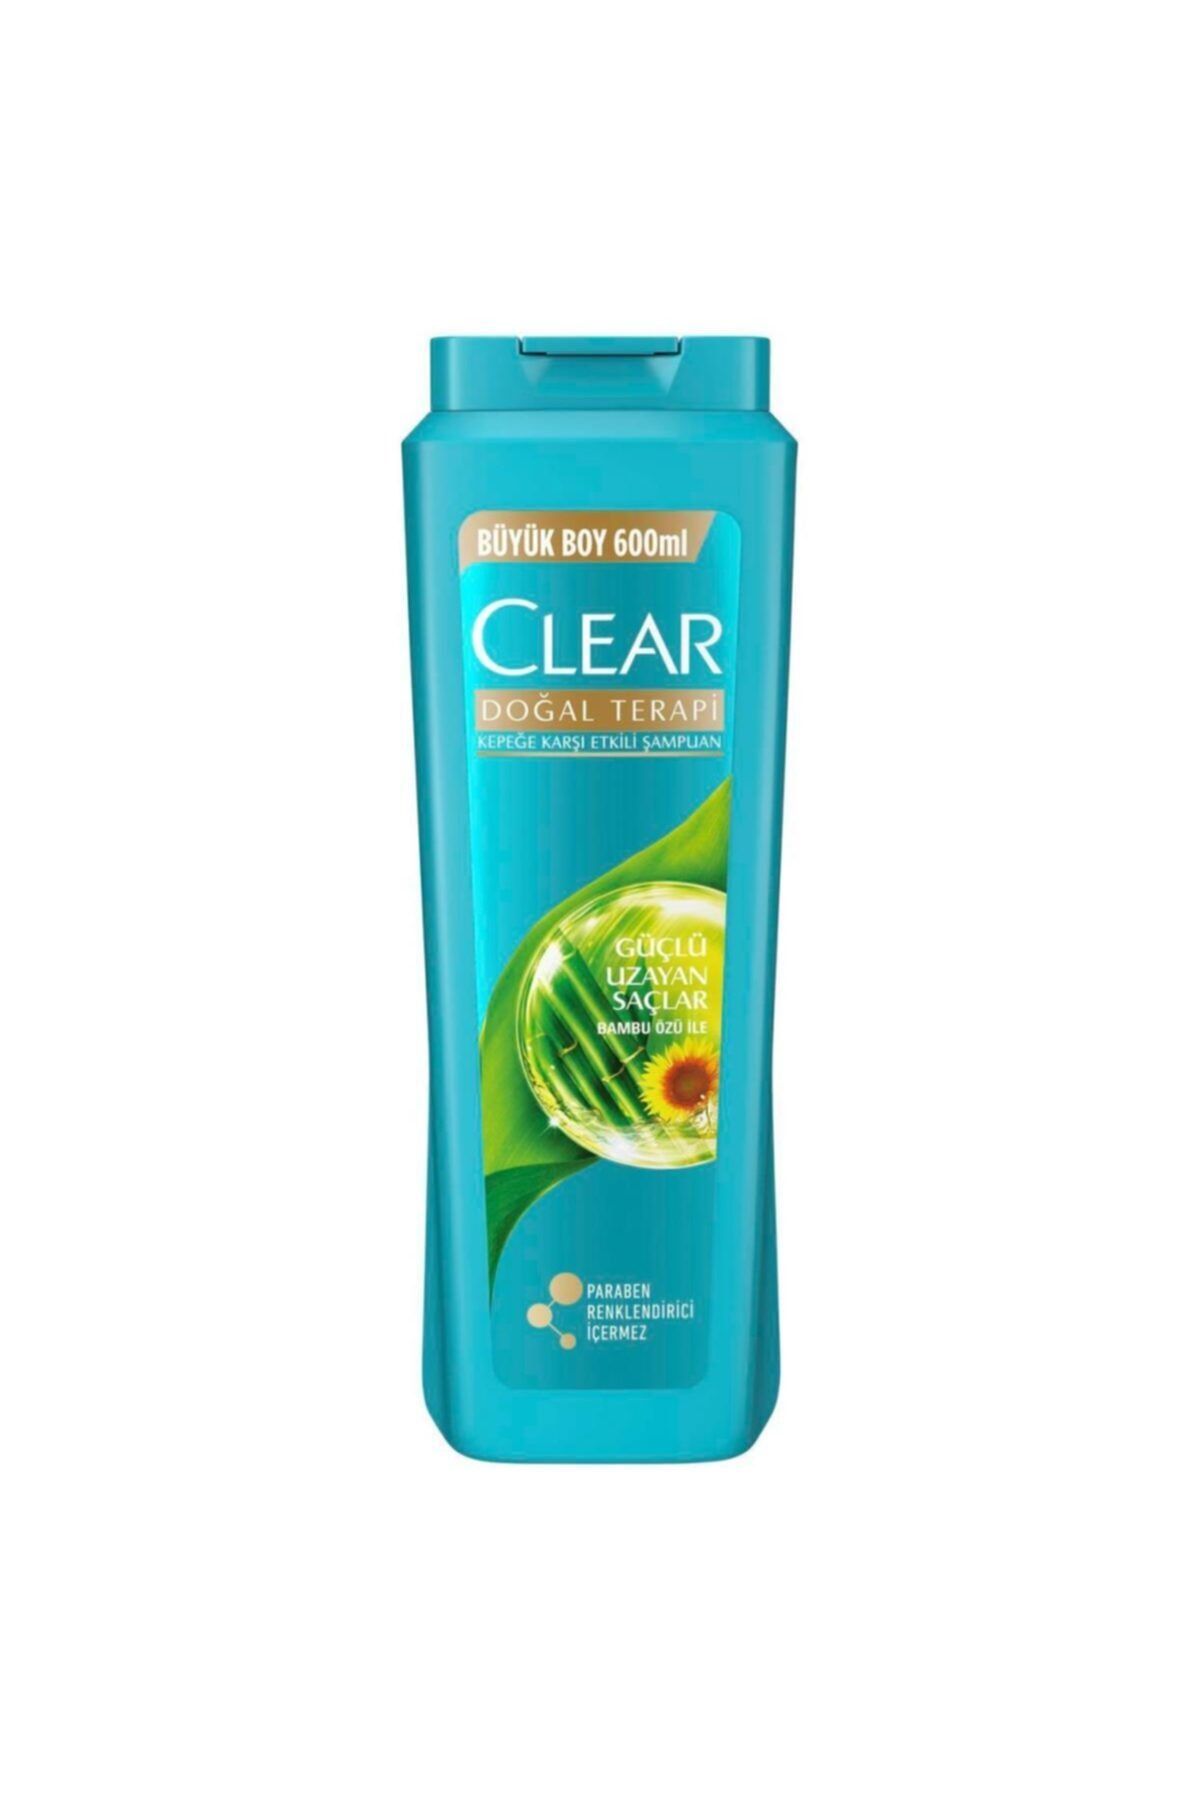 Clean & Clear Marka: Clear Güçlü Uzayan Saçlar Kadın Şampuan 600 Ml Kategori: Deodorant